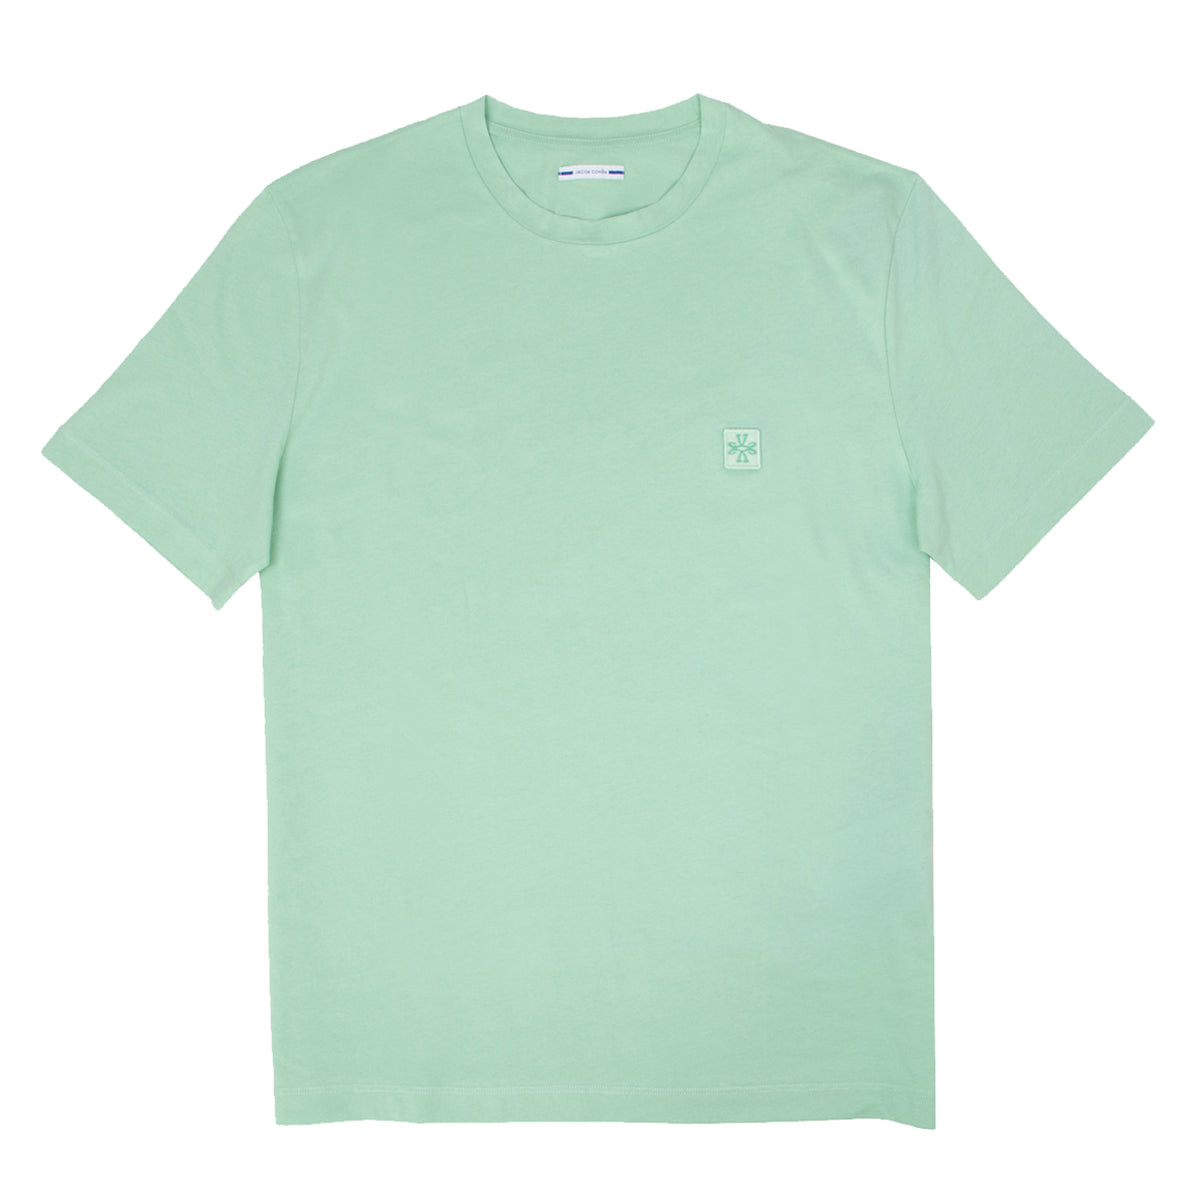 Mint Green 100% Cotton T-Shirt  Jacob Cohen   